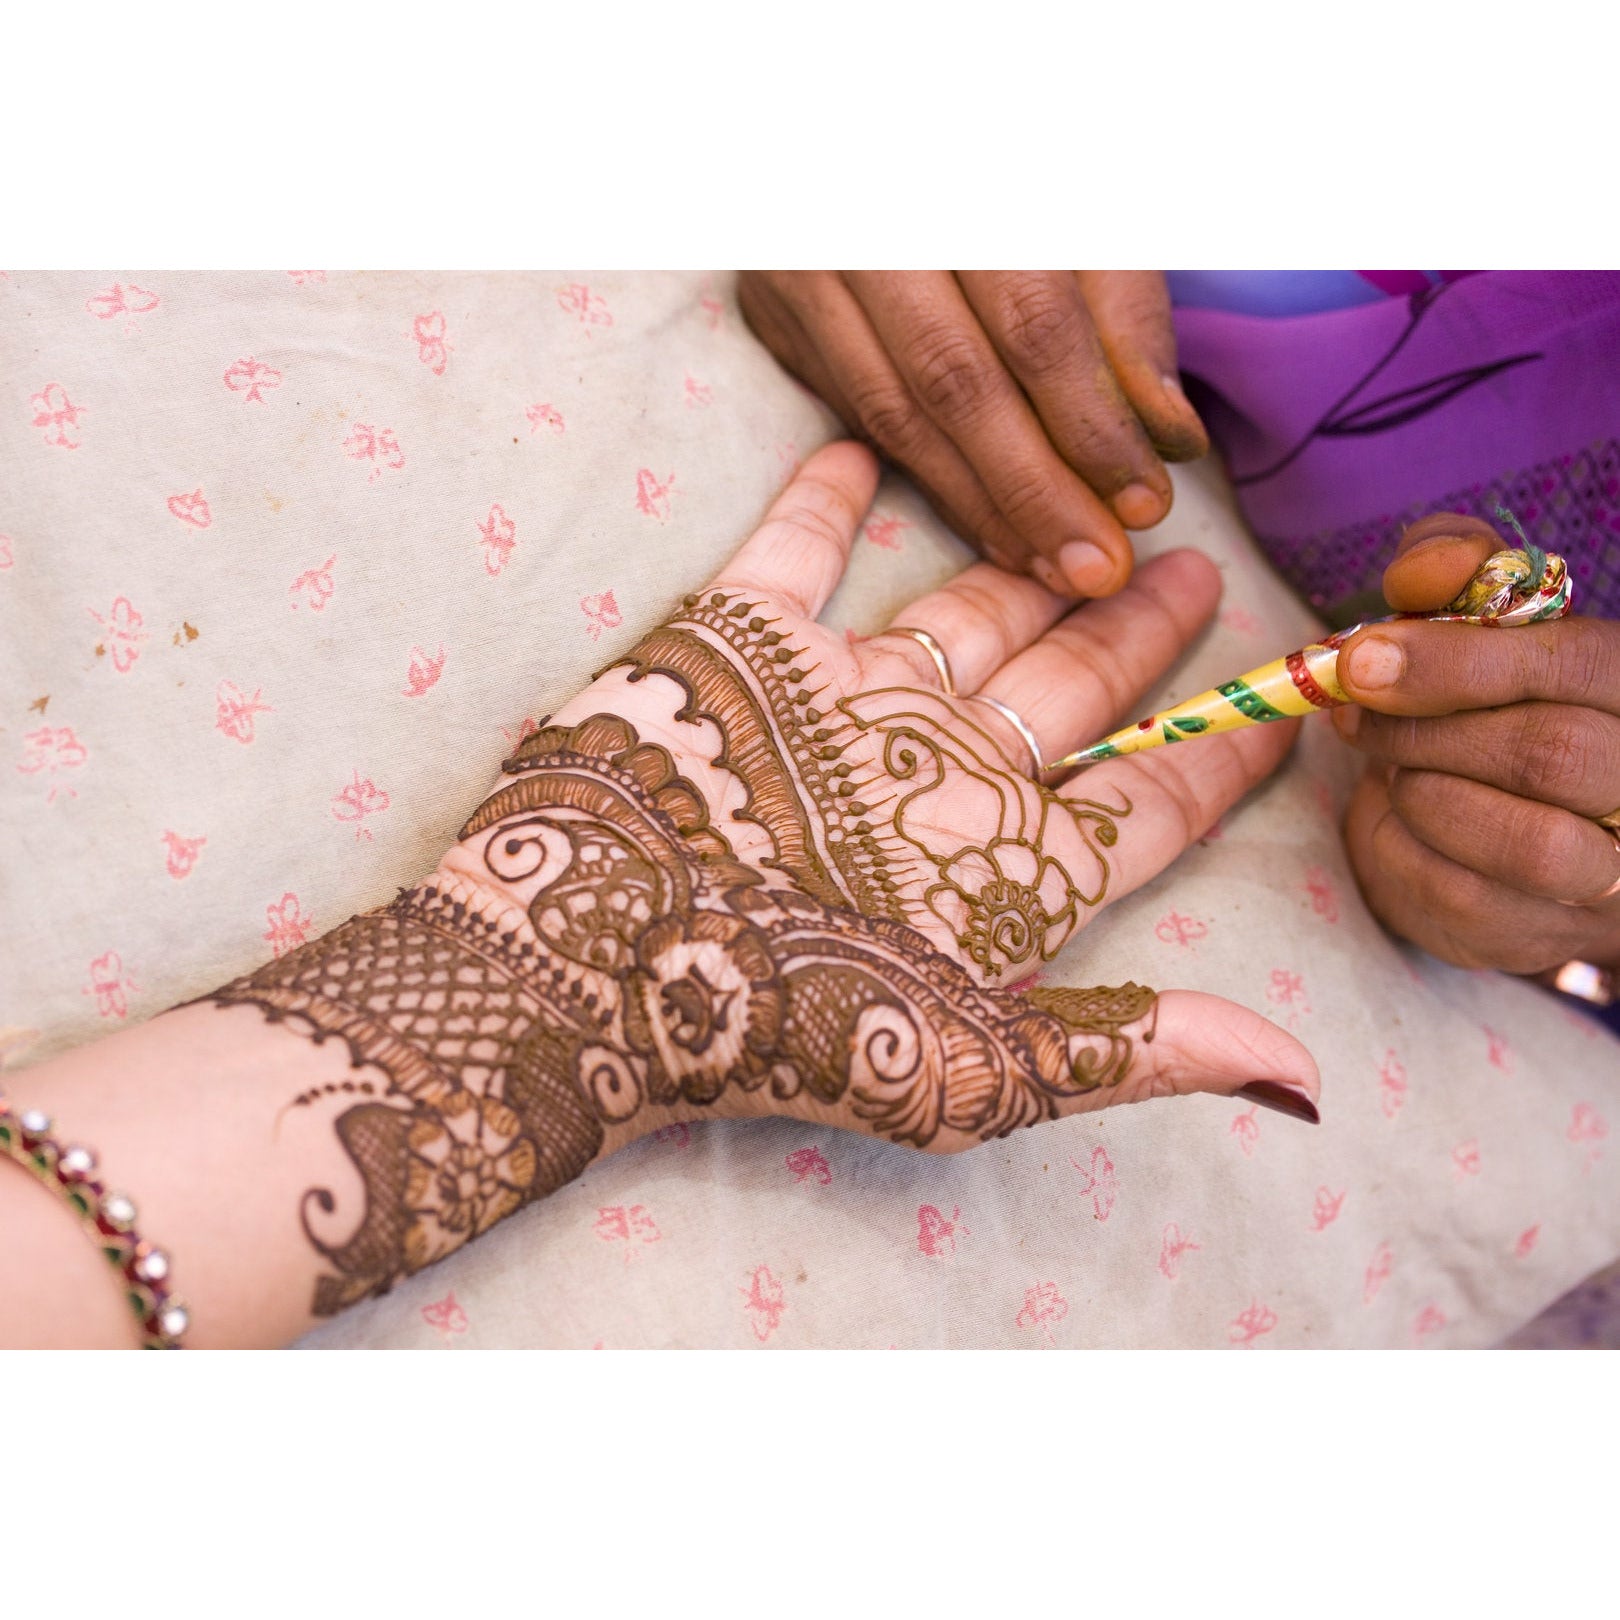 Mehndi-Paste für Henna-/Mehndi-Tattoos